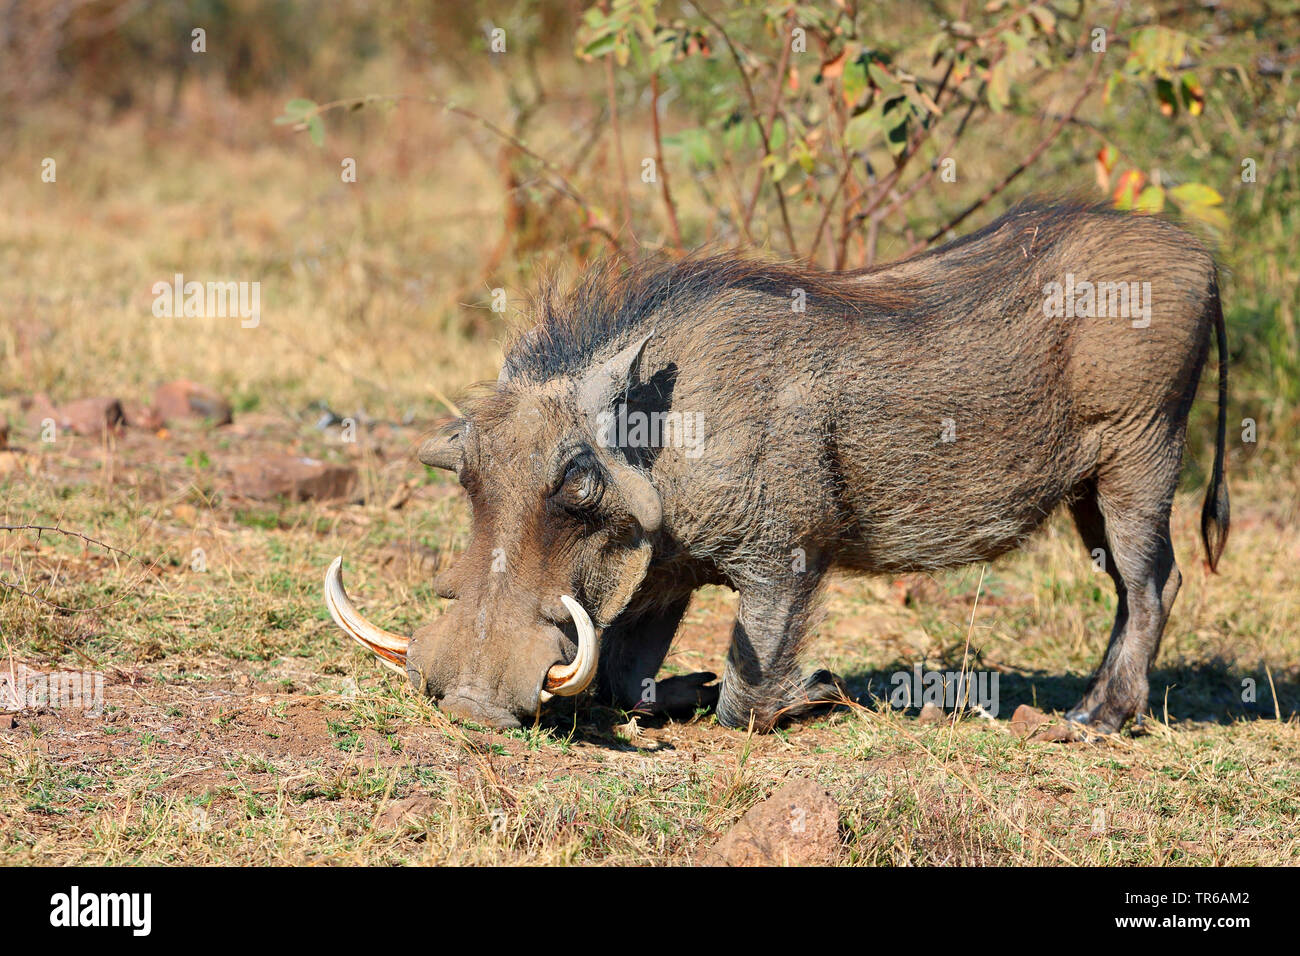 Gemeinsame Warzenschwein, savanna Warzenschwein (Phacochoerus africanus), männlich Fütterung auf Gras, Südafrika, North West Provinz, Pilanesberg National Park Stockfoto